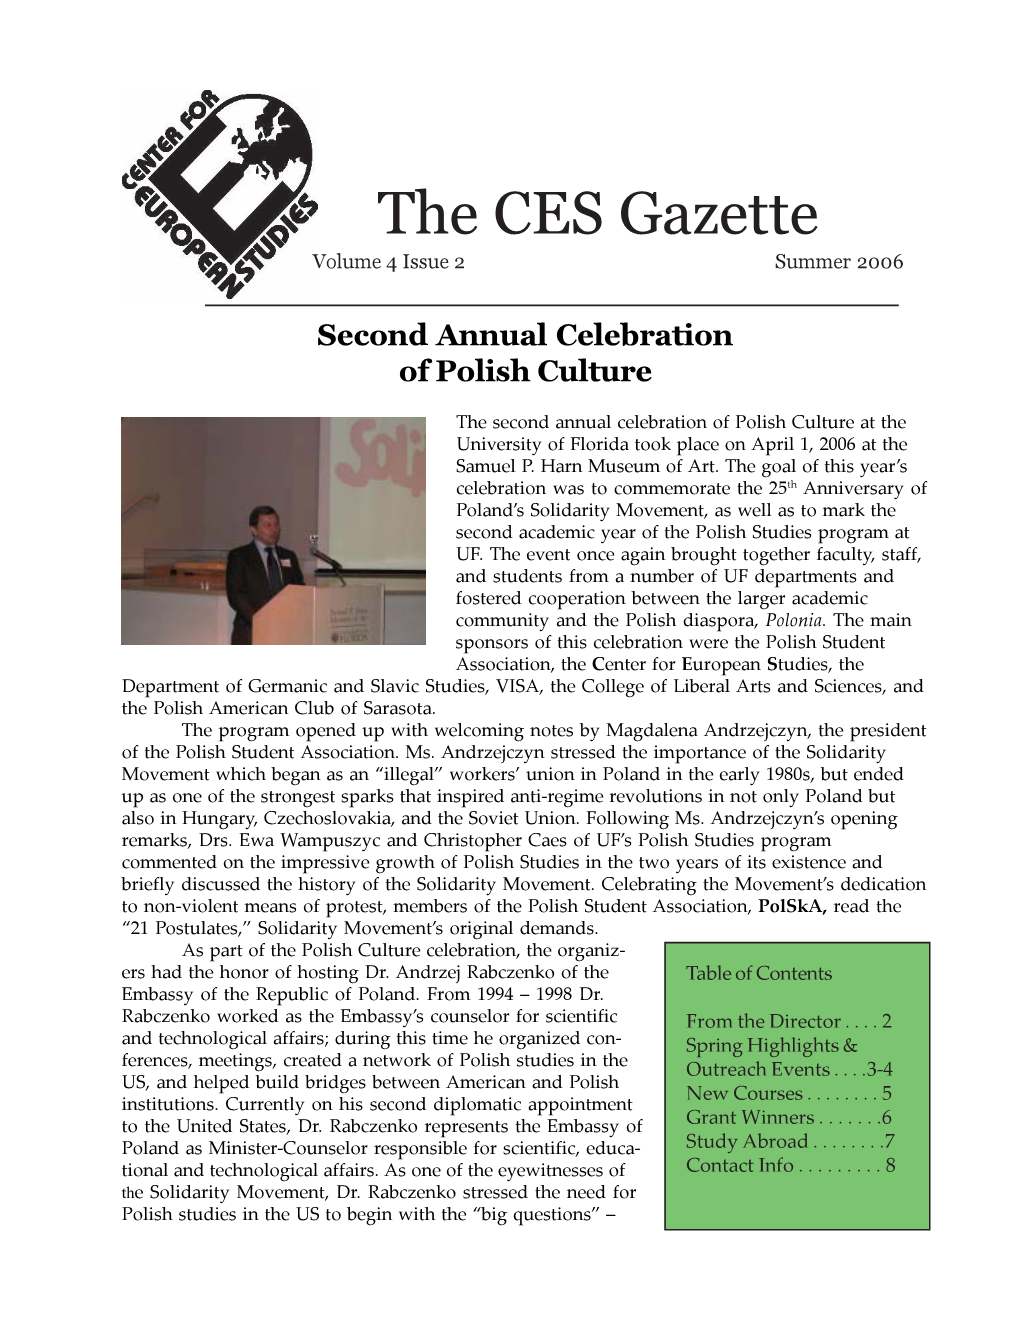 The CES Gazette Volume 4 Issue 2 Summer 2006